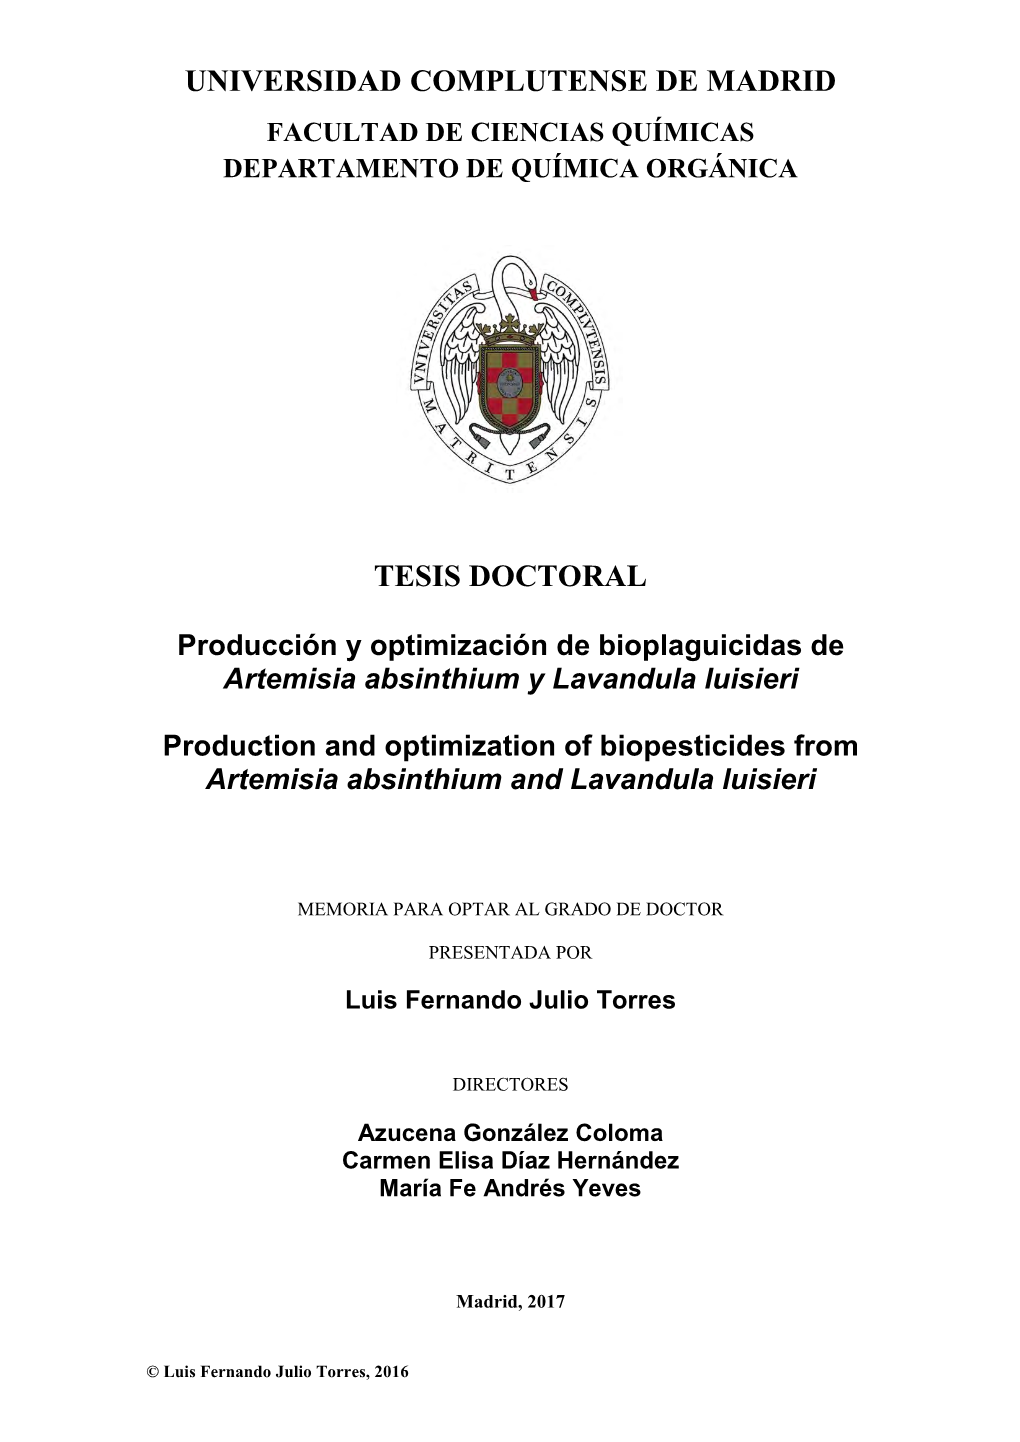 Producción Y Optimización De Bioplaguicidas De Artemisia Absinthium Y Lavandula Luisieri